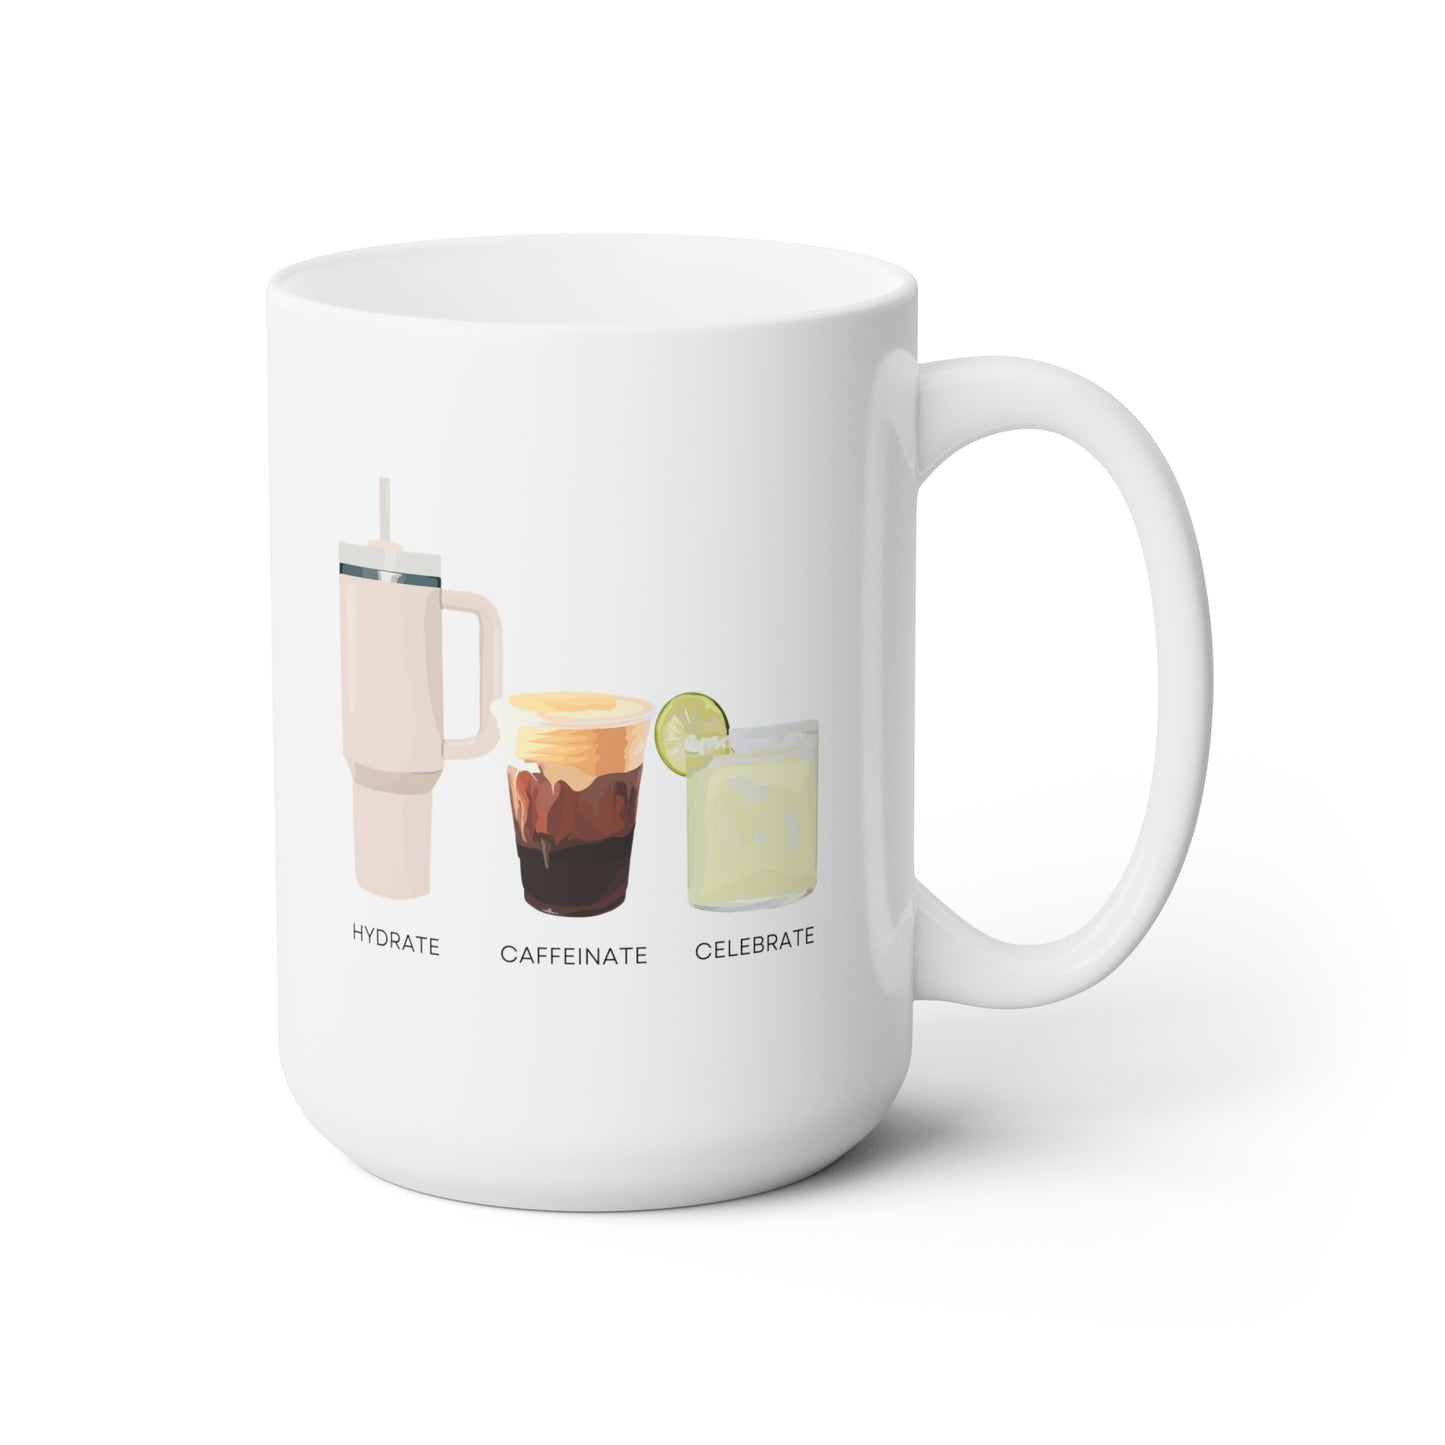 Hydrate Caffeinate Celebrate Ceramic Mug 15oz | Water Coffee Margarita